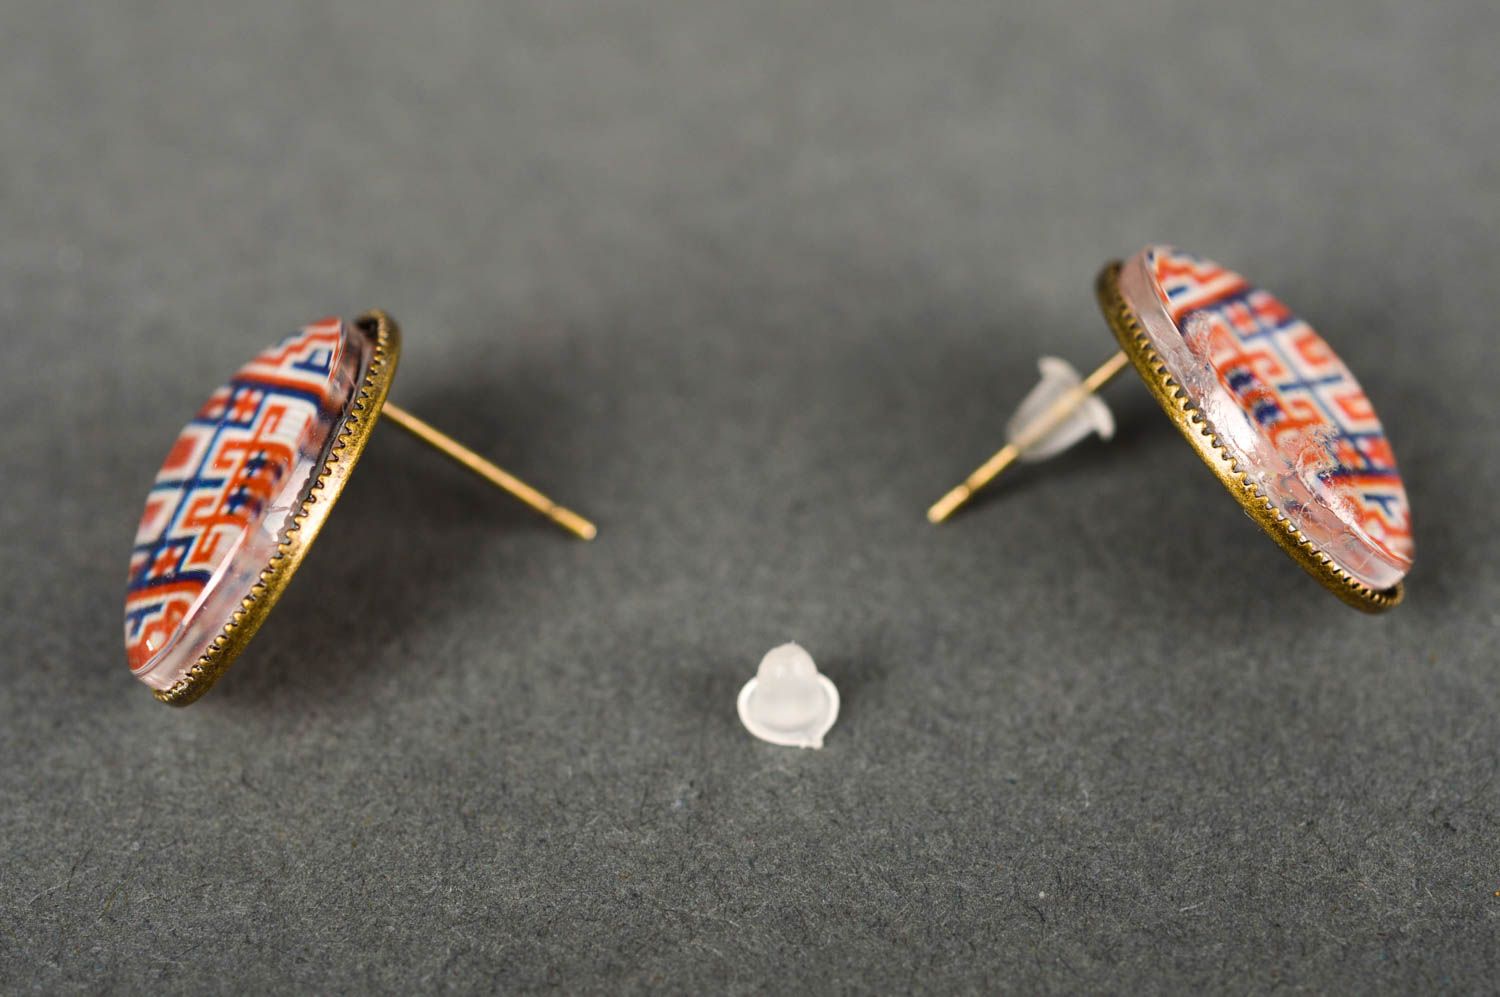 Handmade stylish earrings with ethnic print ethnic earrings vintage jewelry photo 3